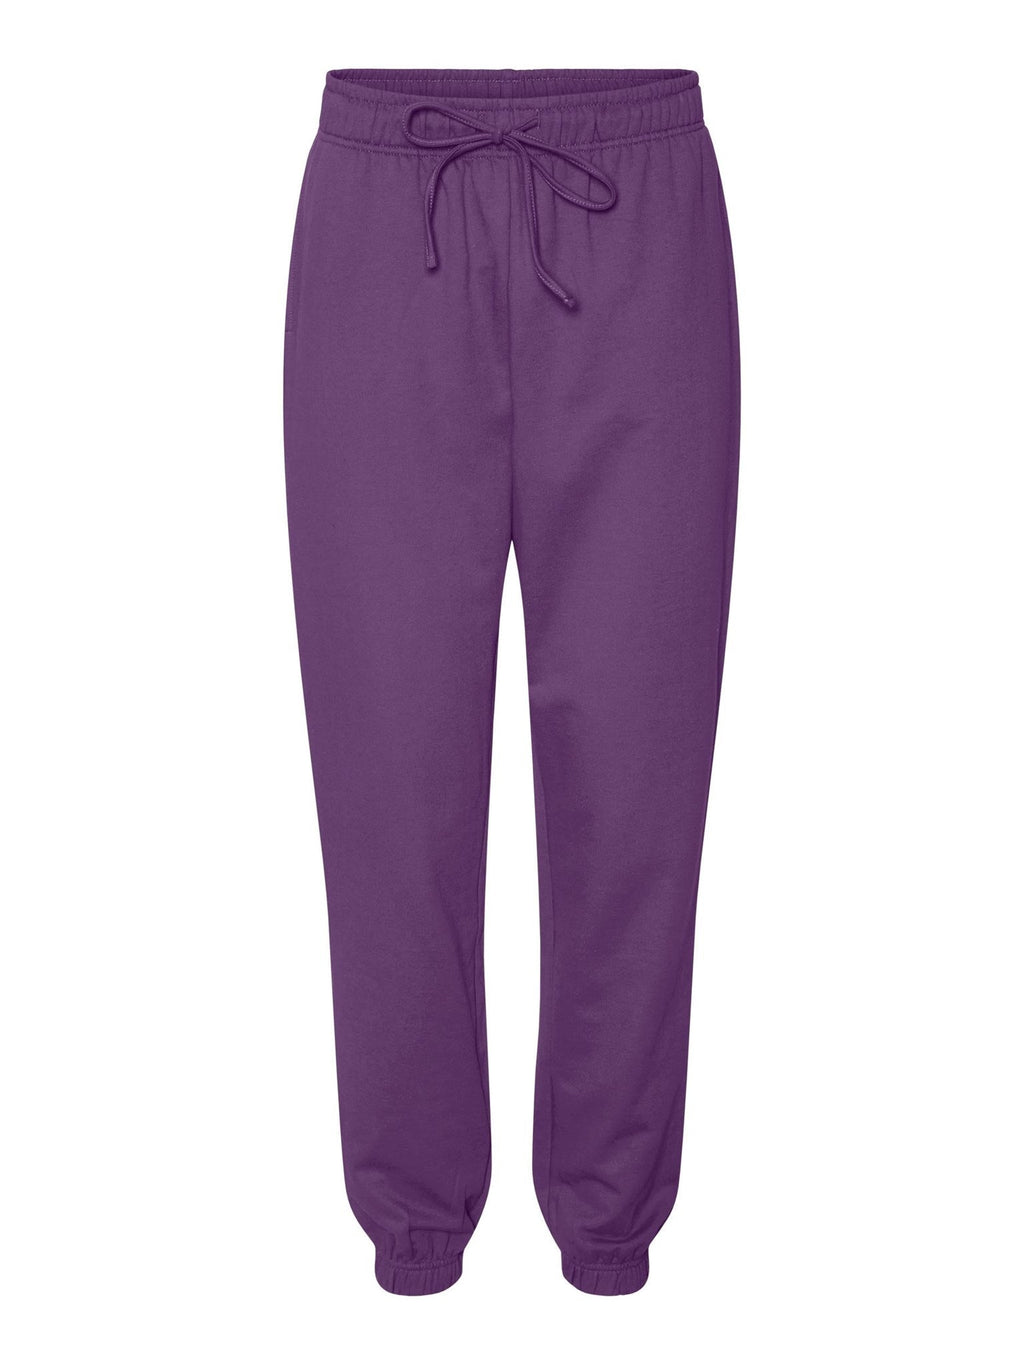 芝加哥汗裤 - 紫色